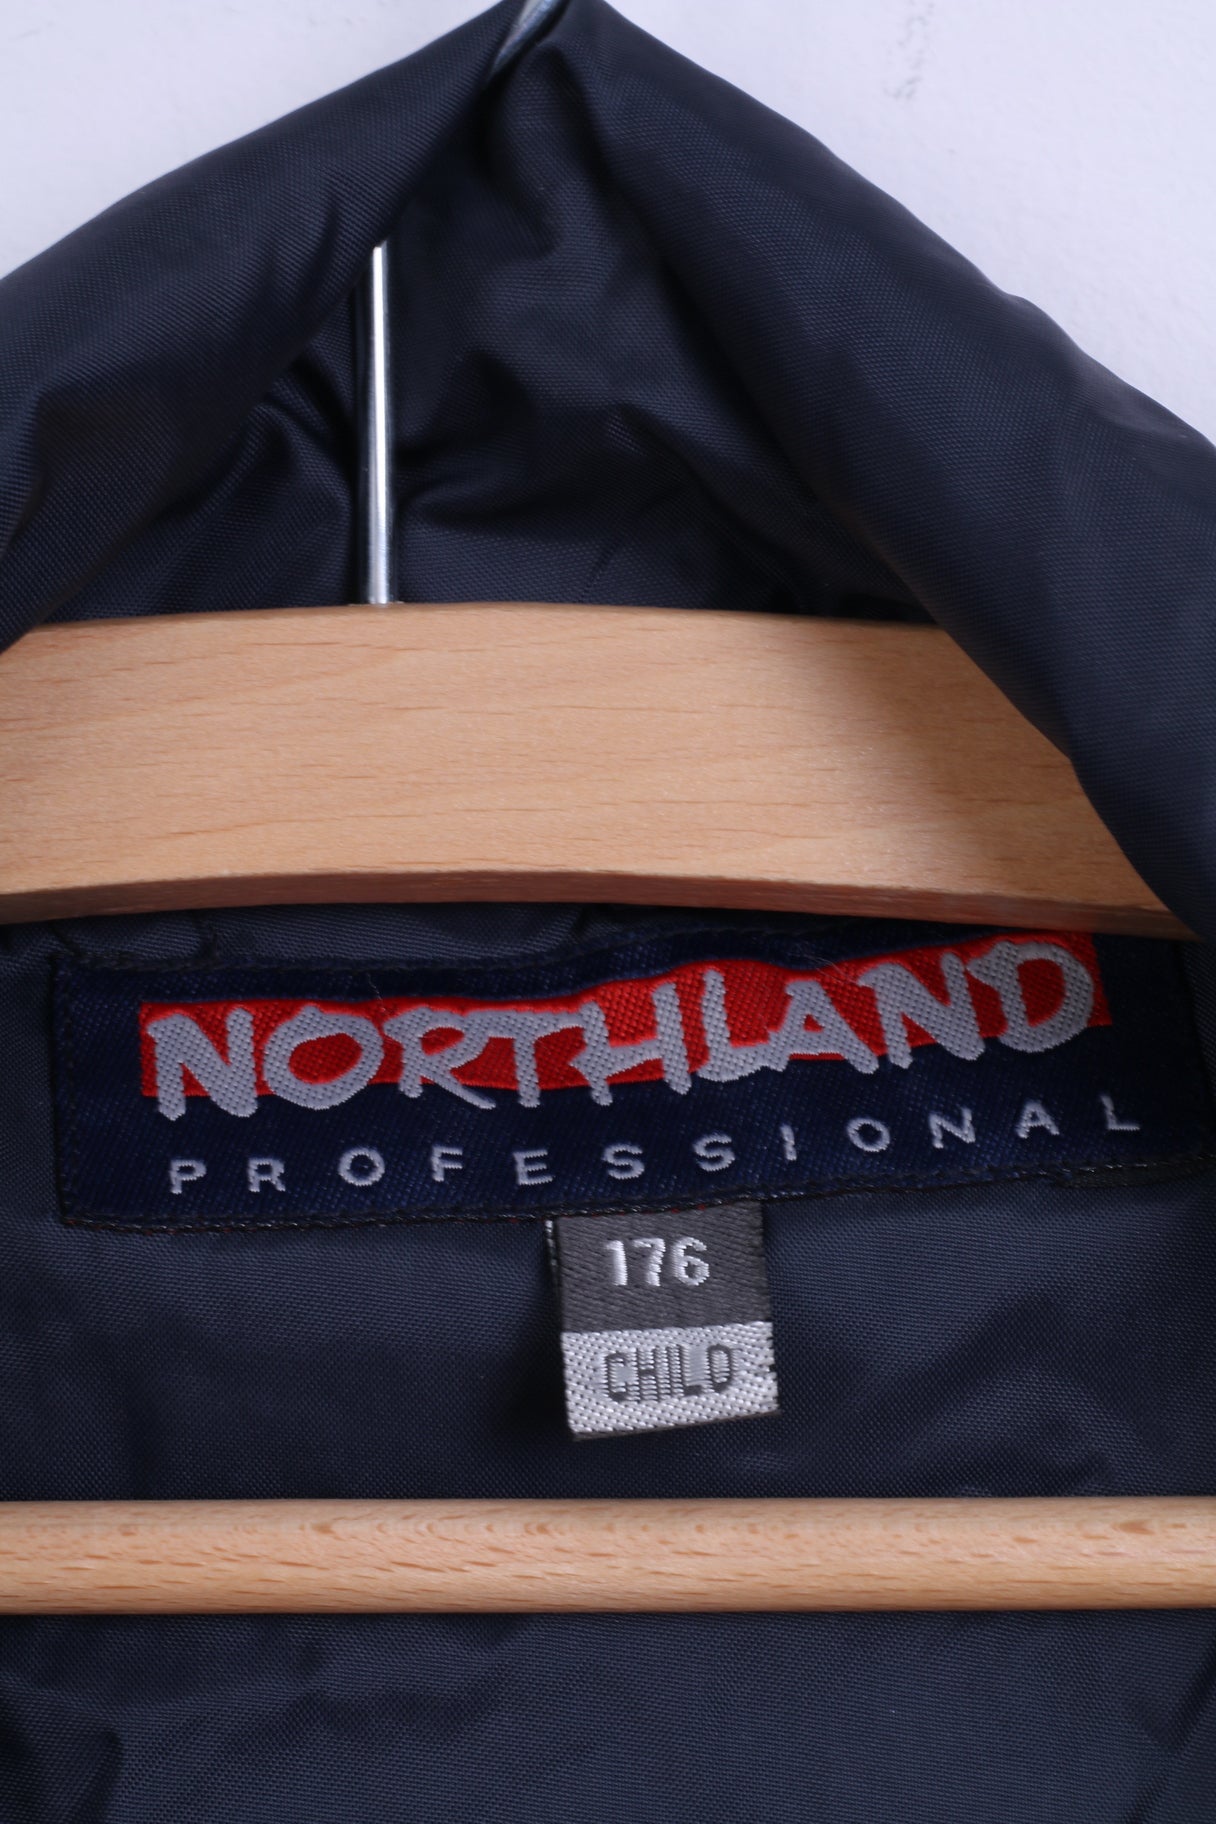 Northland Mens 176 M Jacket Navy Nylon Rainproof Hooded Zip Up Top